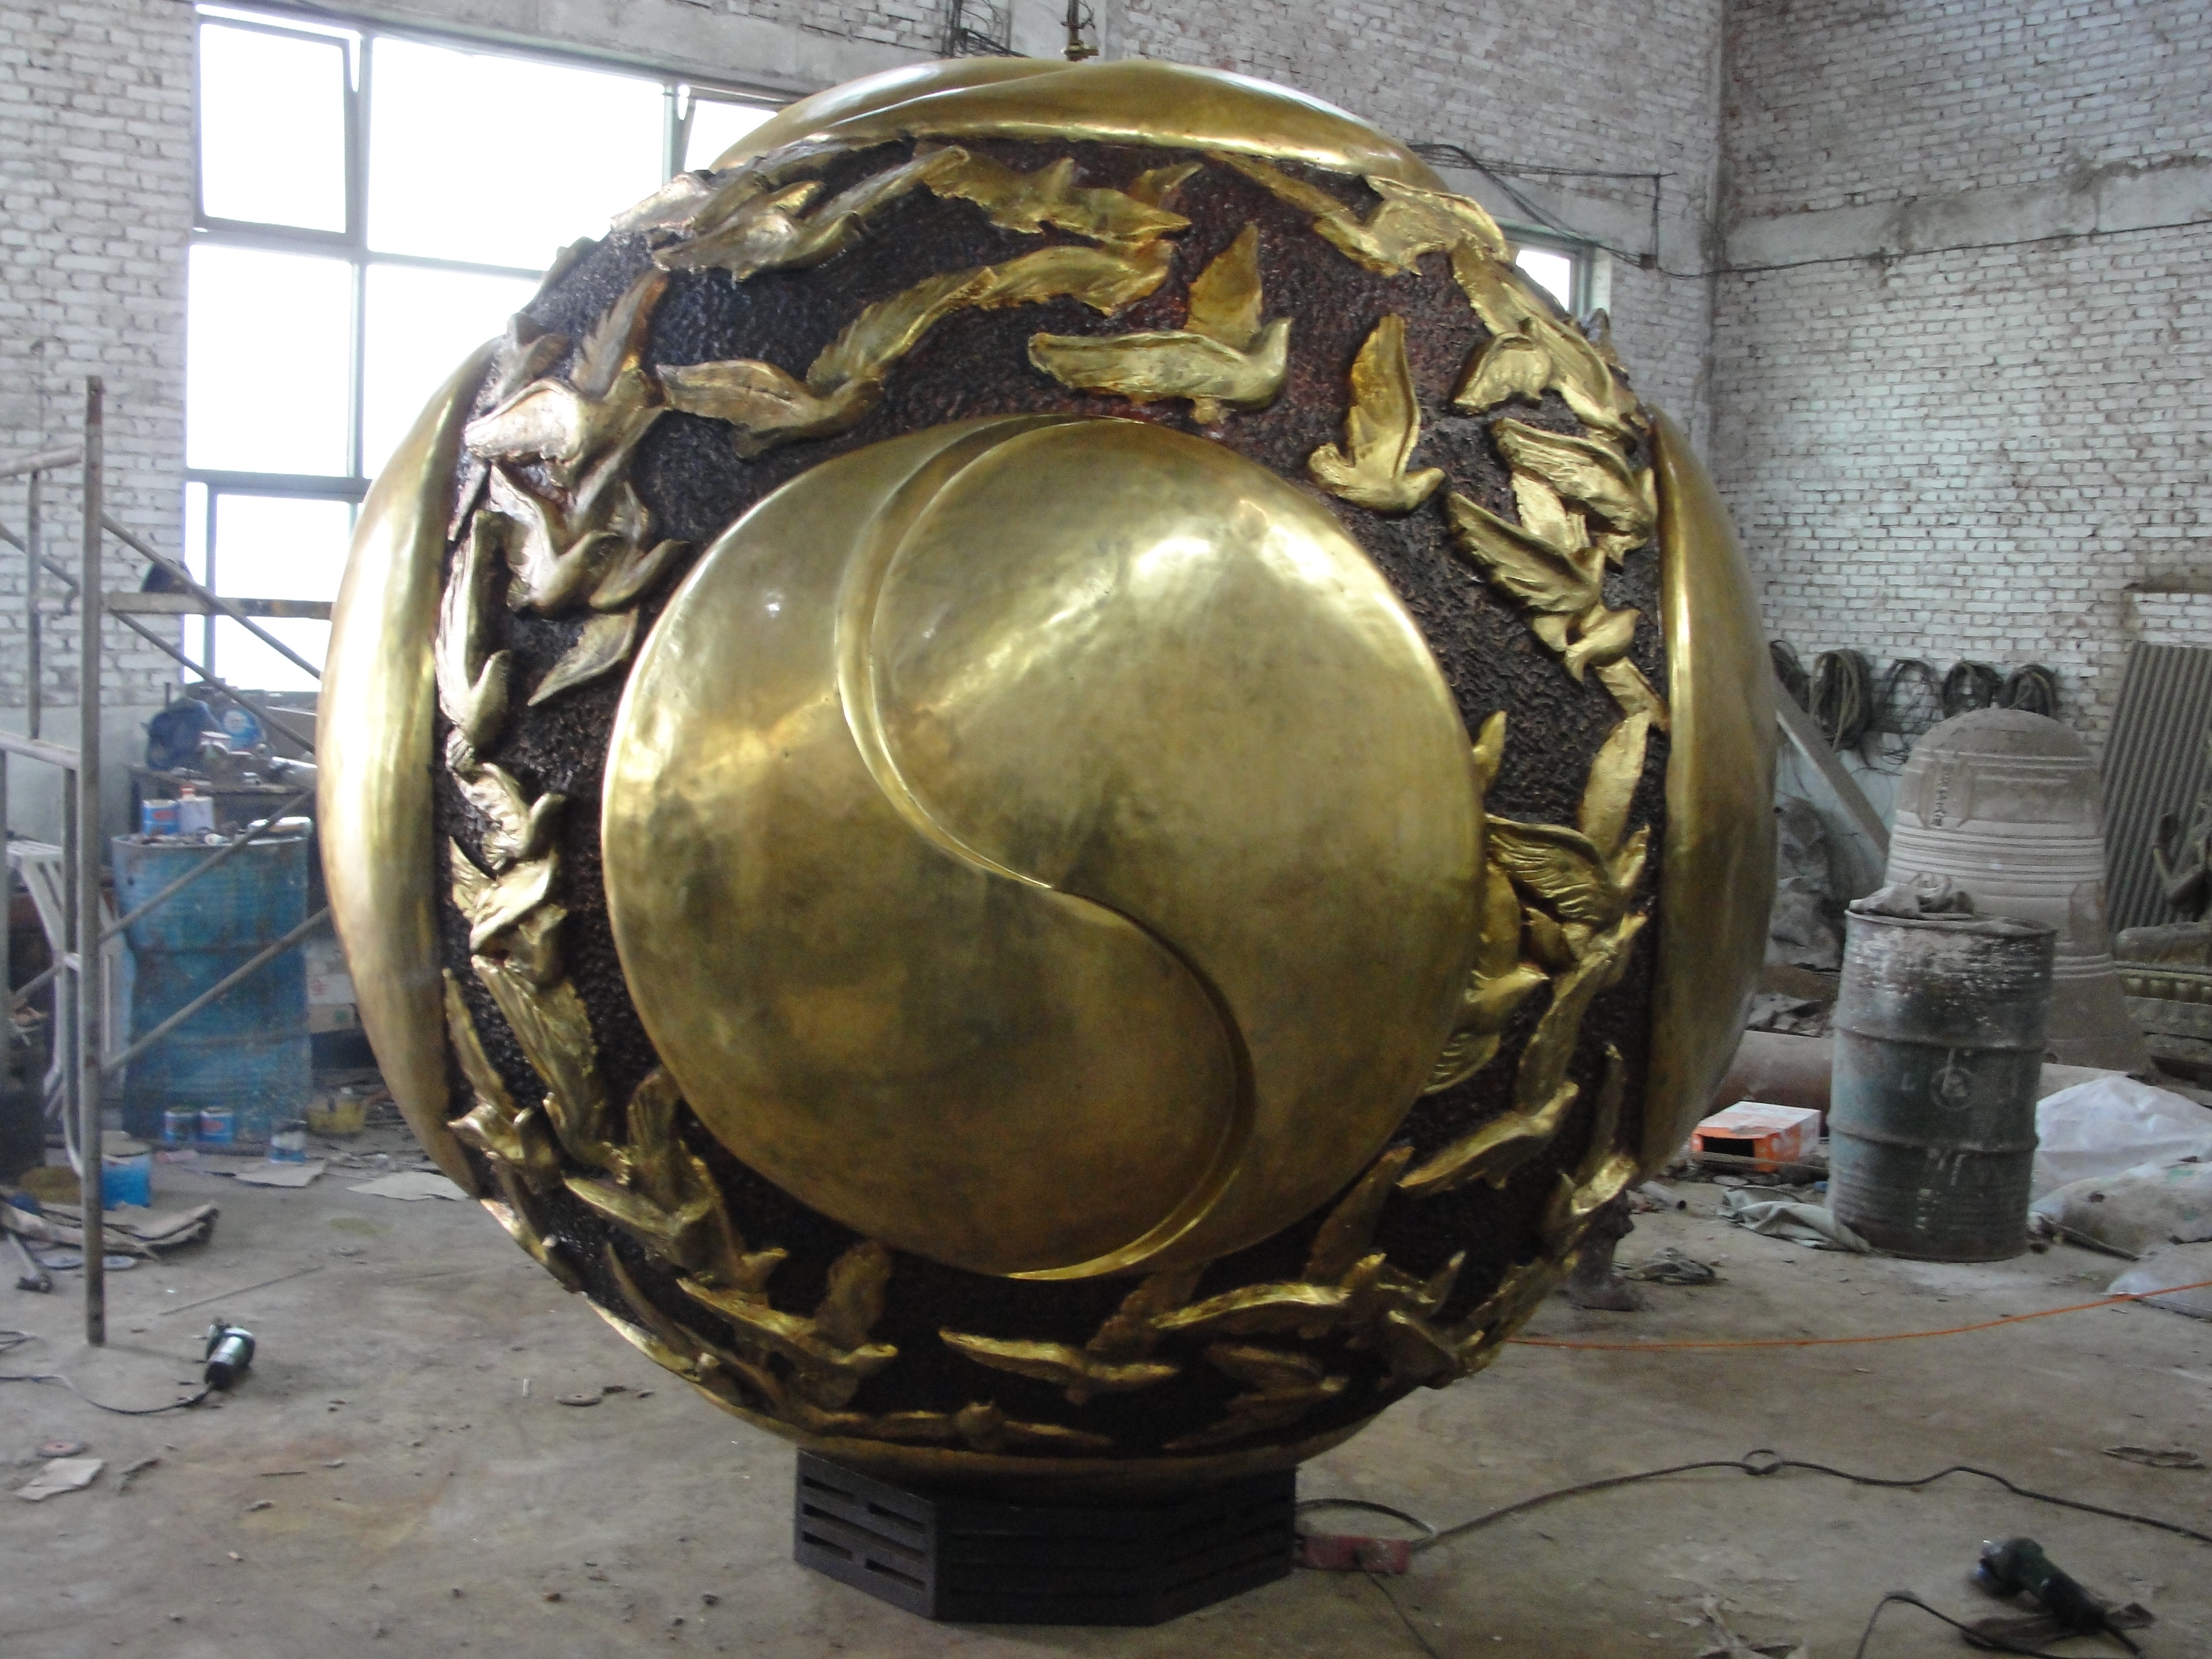 供应用于乔迁的大型铜雕塑2米铸铜球雕塑全国最大直销最低价格批发厂家店庆优惠质量第一图片